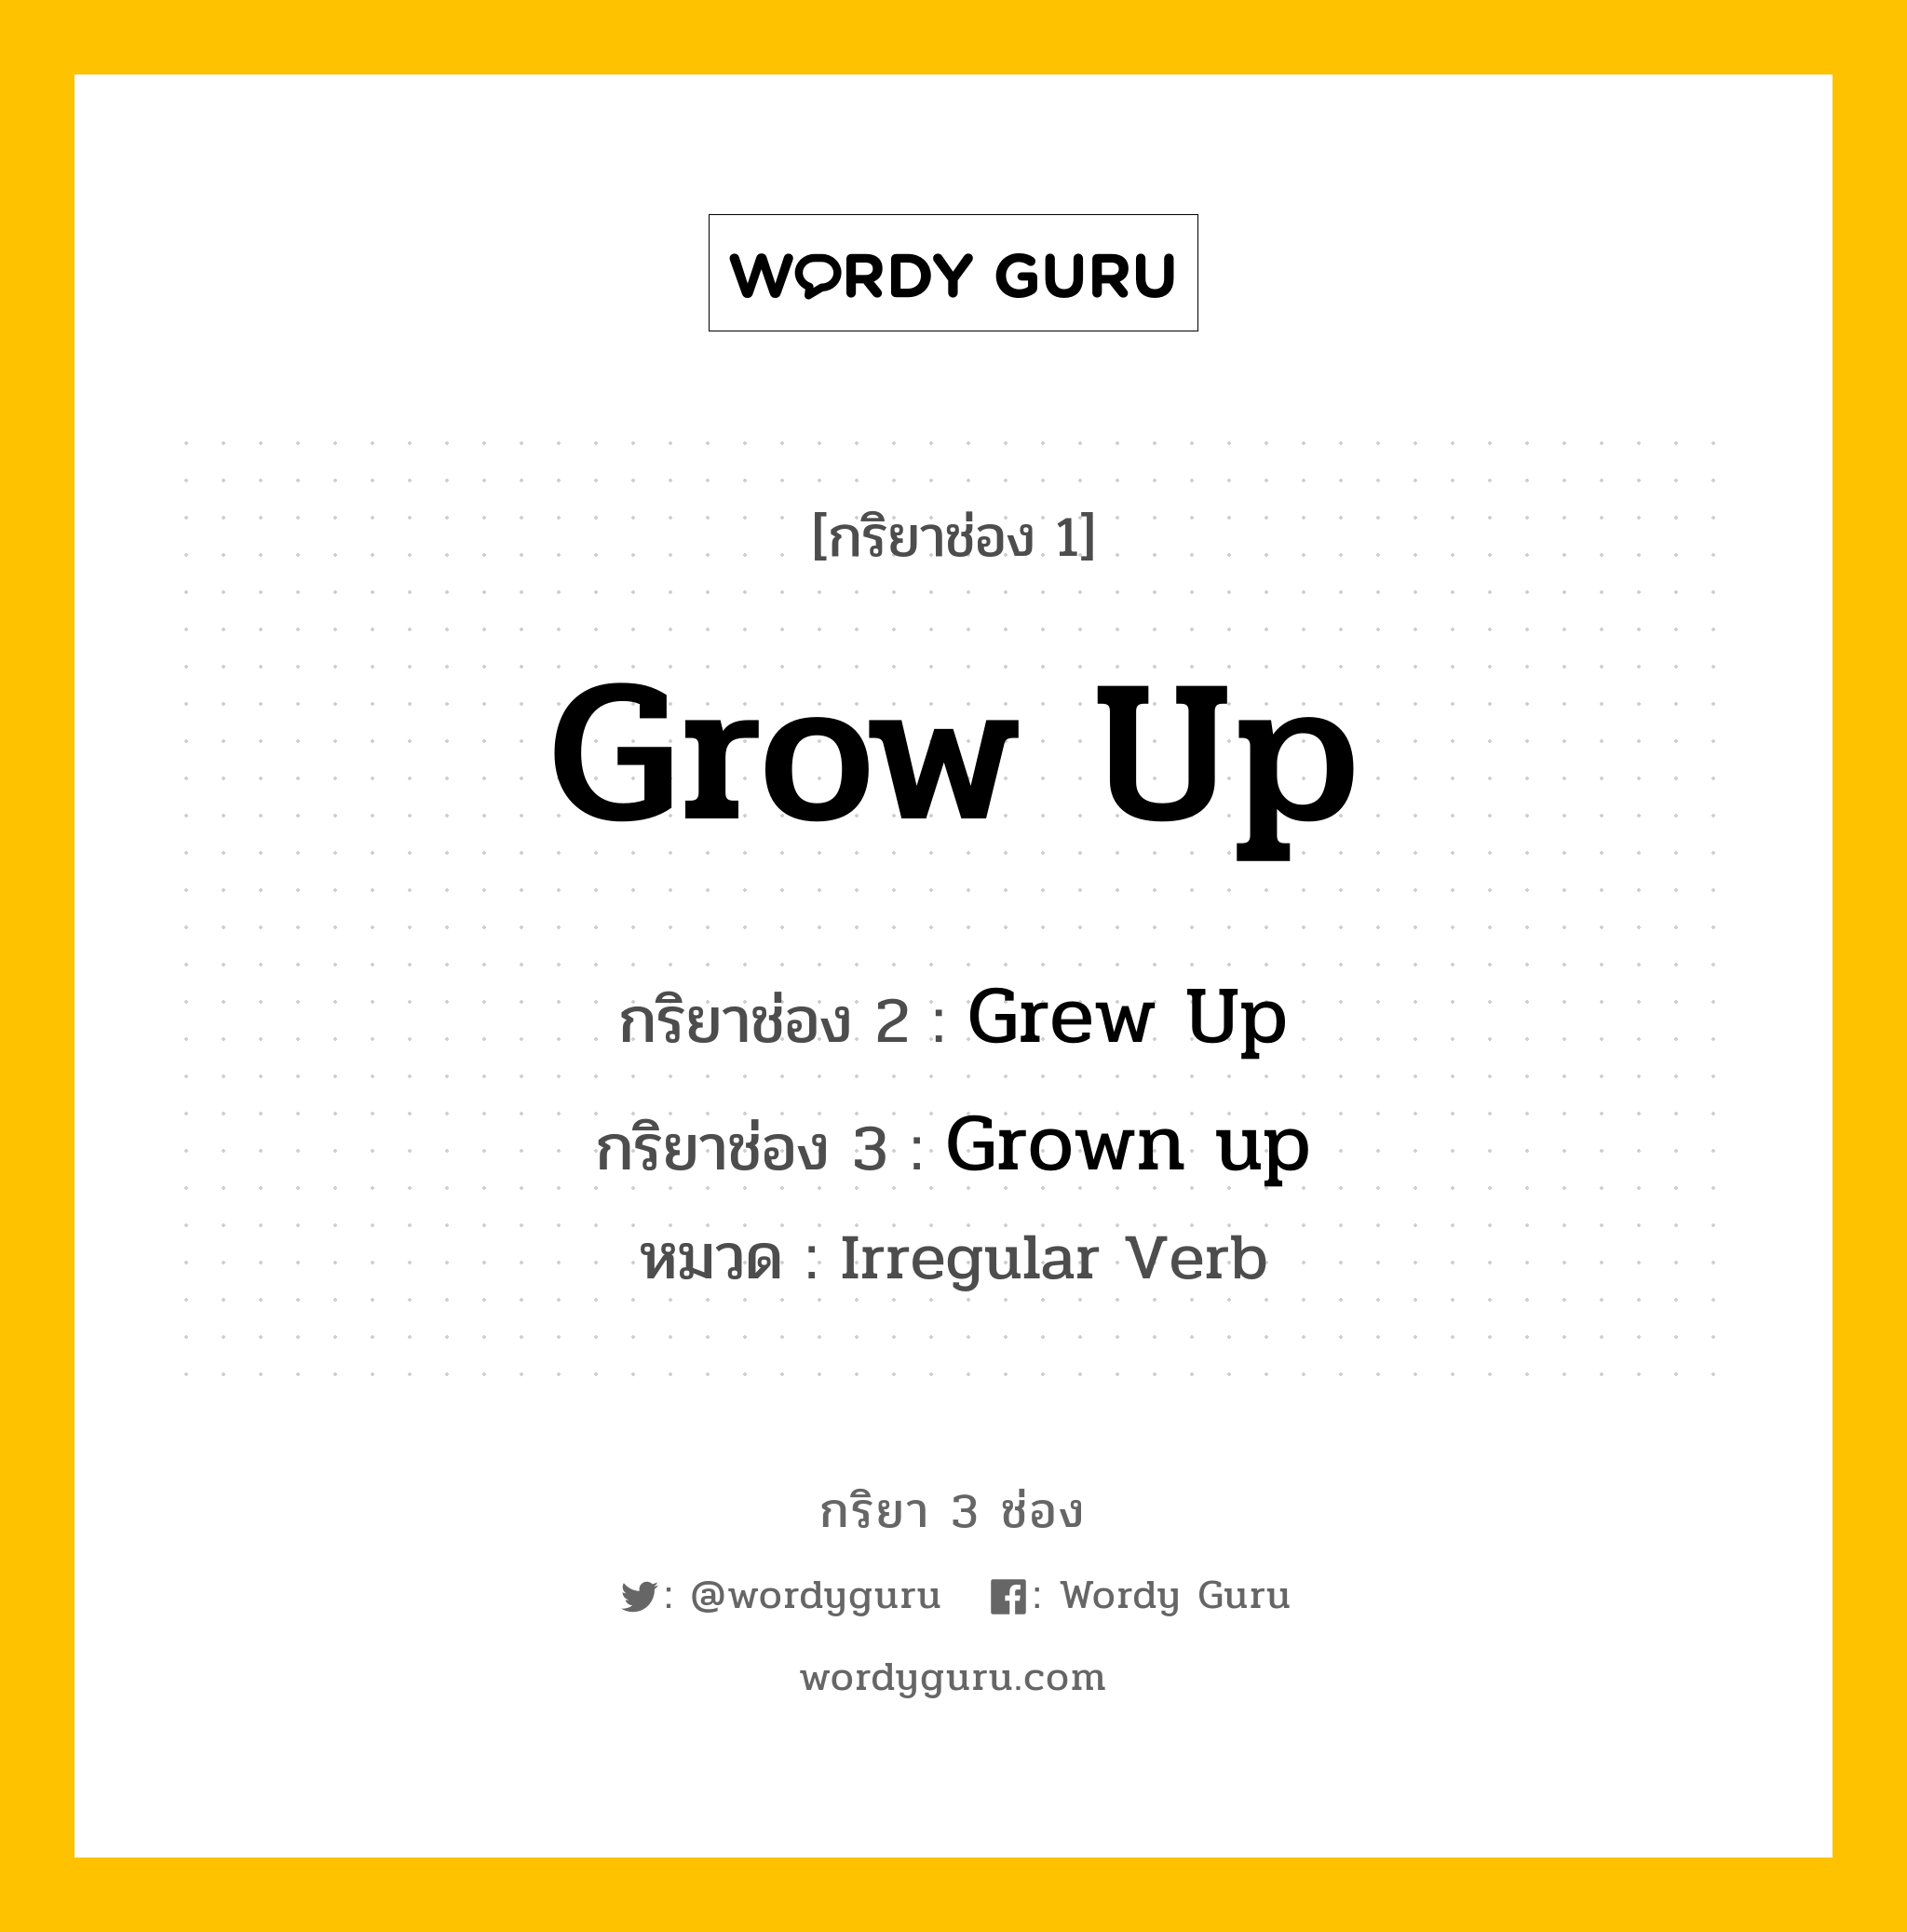 กริยา 3 ช่อง: Grow Up ช่อง 2 Grow Up ช่อง 3 คืออะไร, กริยาช่อง 1 Grow Up กริยาช่อง 2 Grew Up กริยาช่อง 3 Grown up หมวด Irregular Verb หมวด Irregular Verb